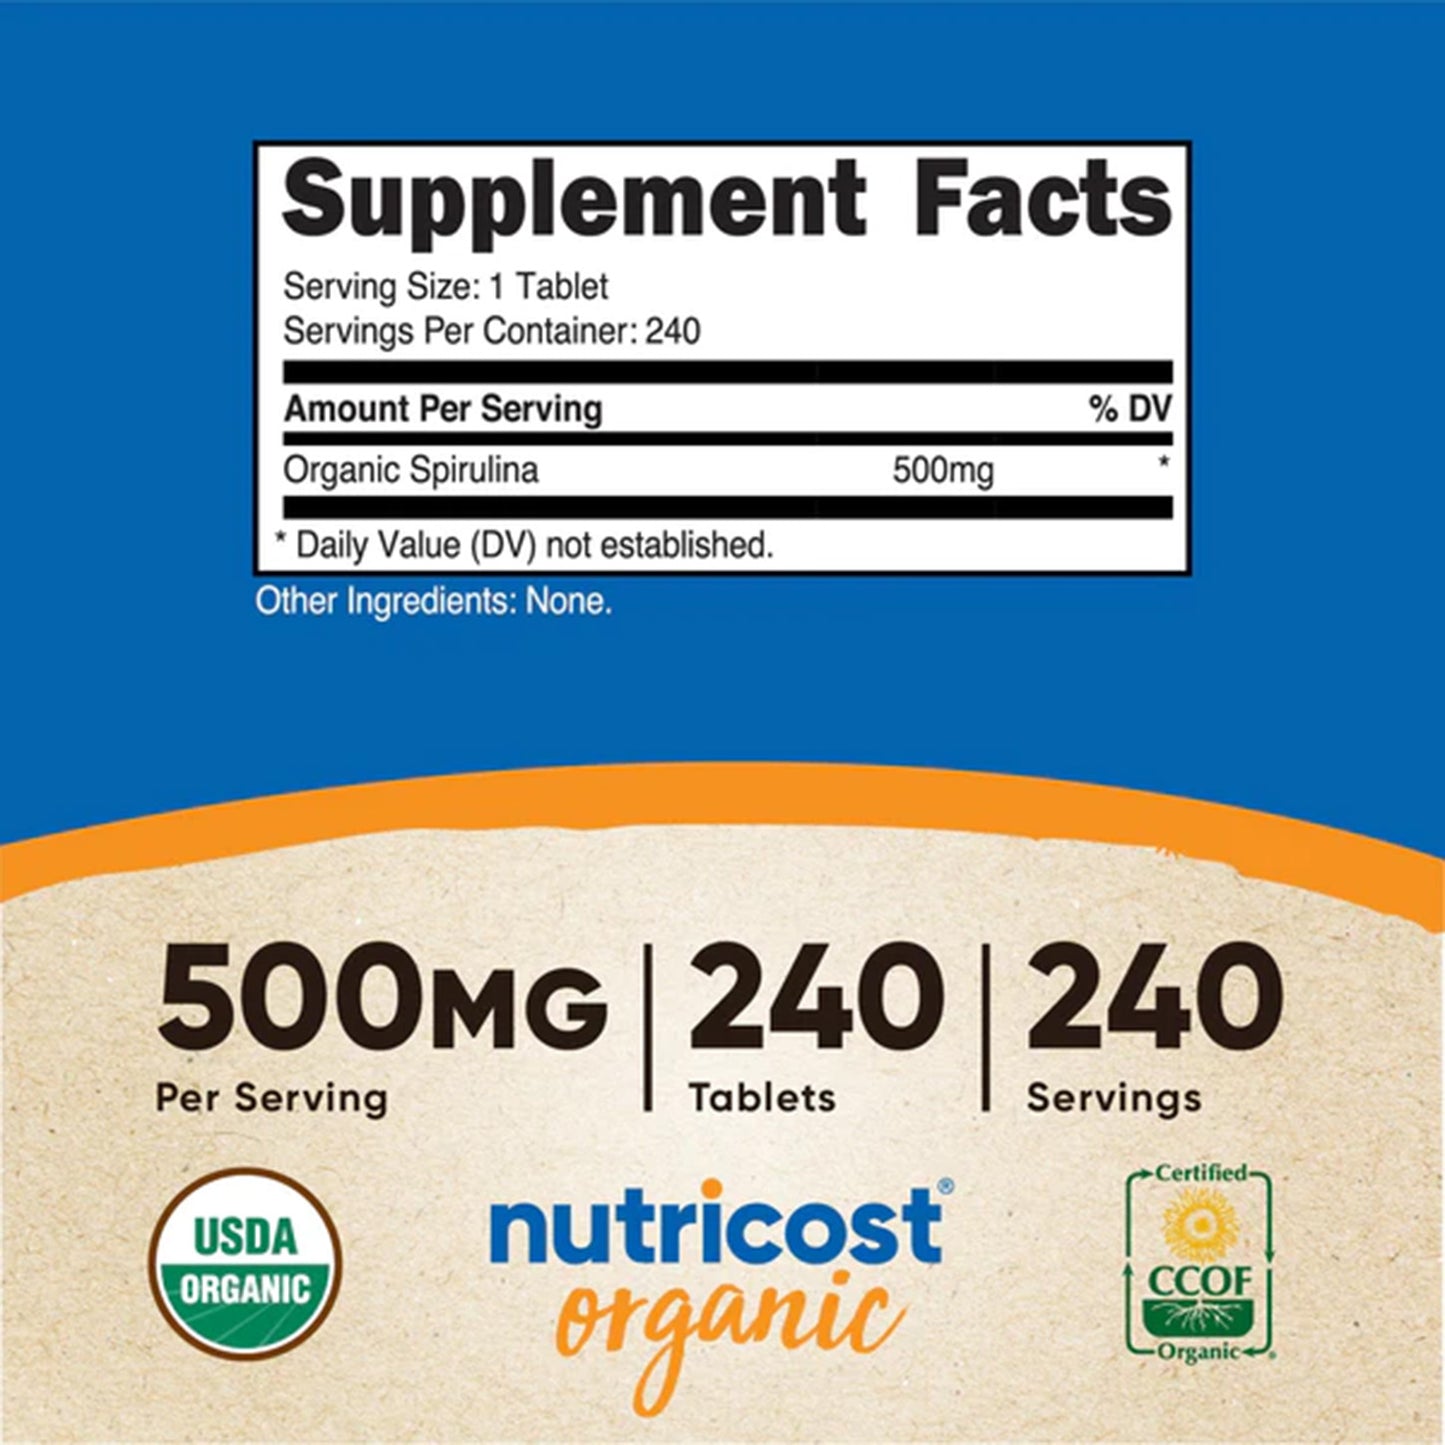 Aumenta tu Ingesta Nutricional con las Tabletas de Espirulina Orgánica de Nutricost | ProHealth Shop [Panamá]